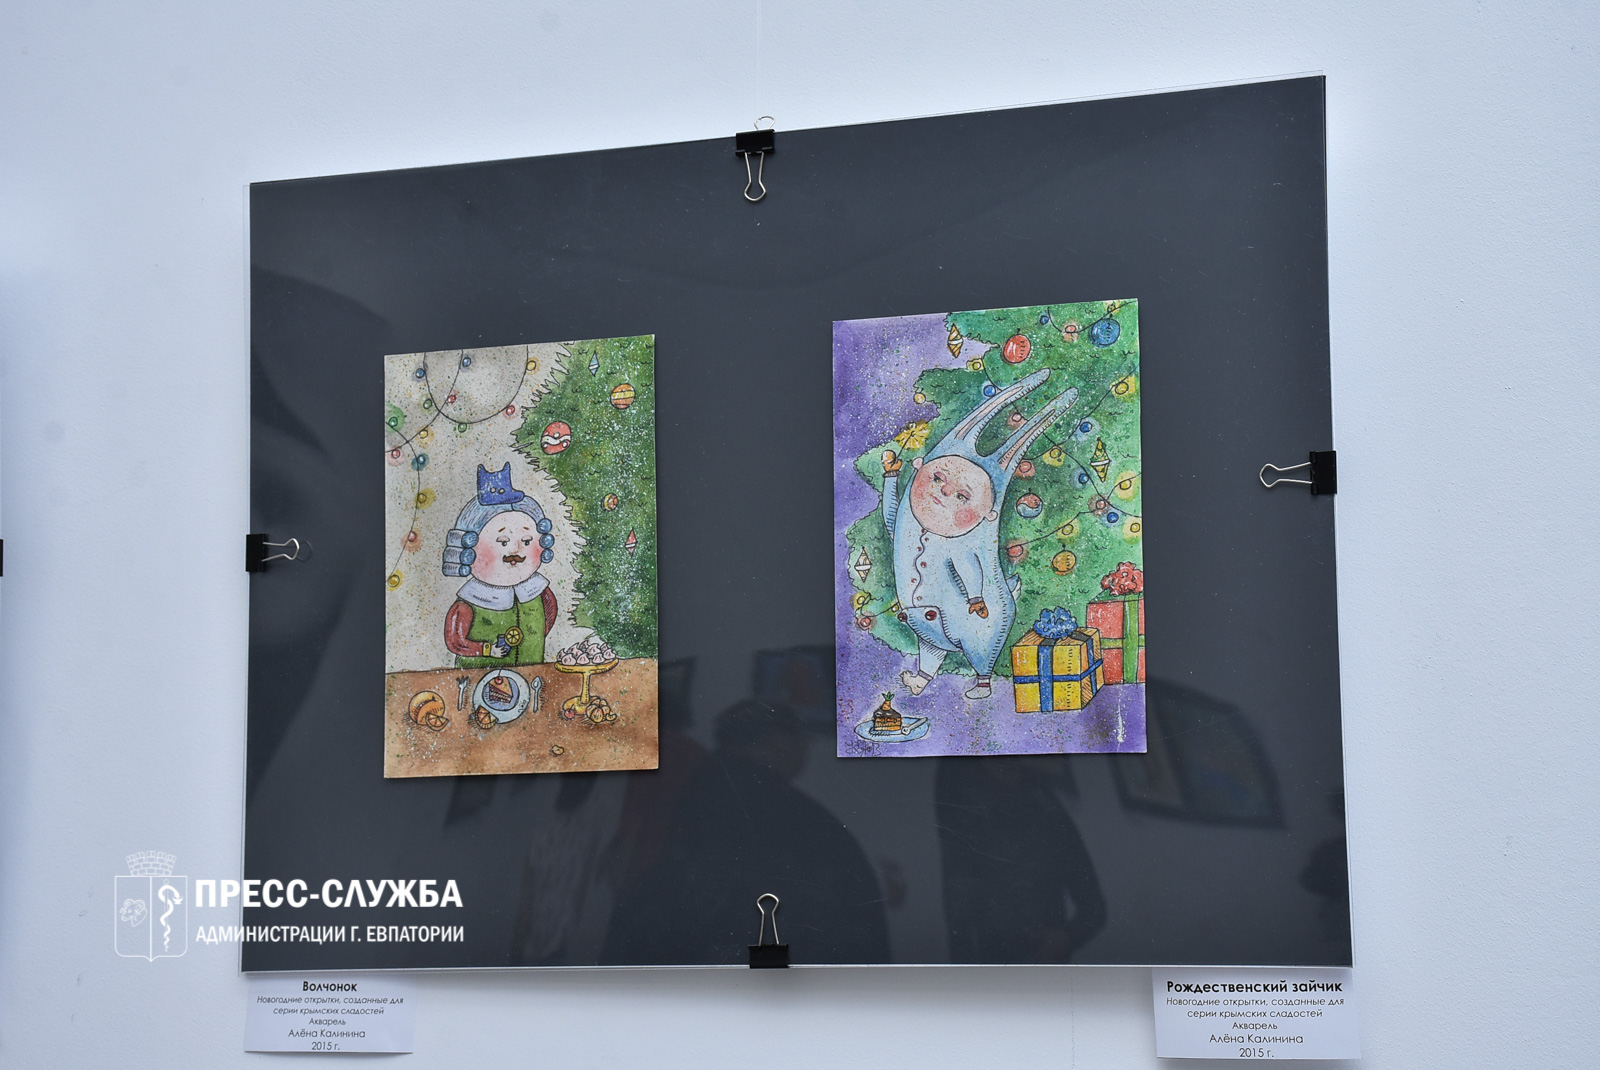 В Доме молодежи открылась выставка картин, созданных в цифровом формате